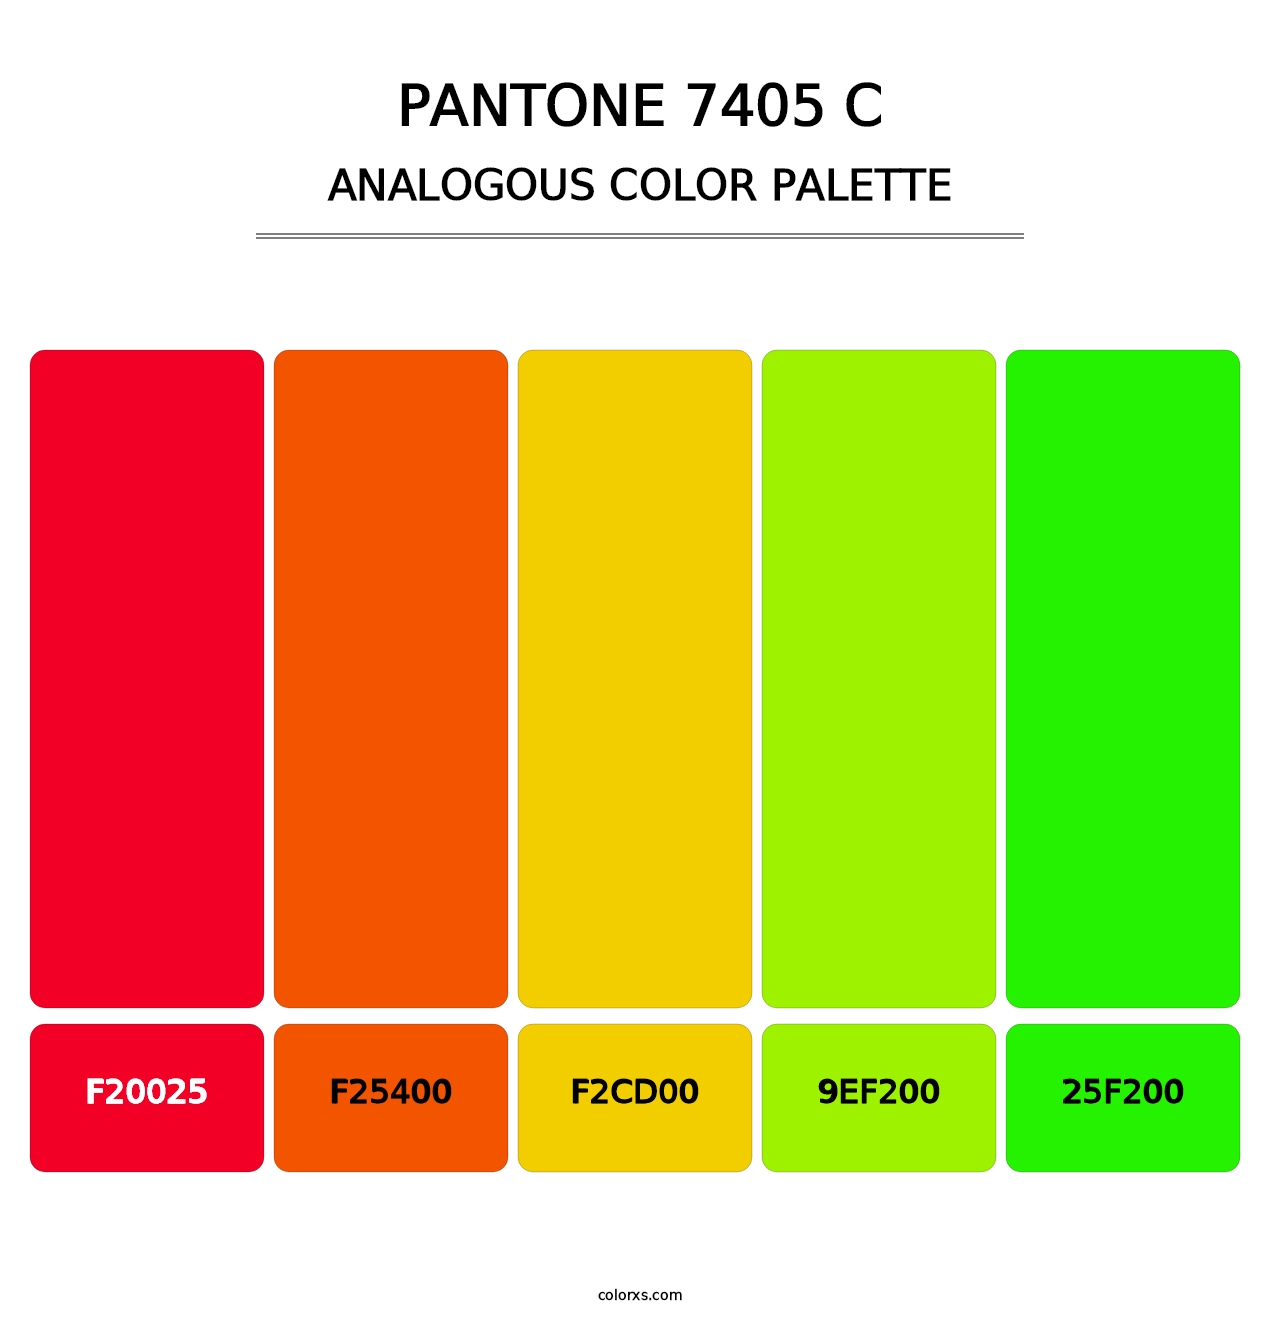 PANTONE 7405 C - Analogous Color Palette